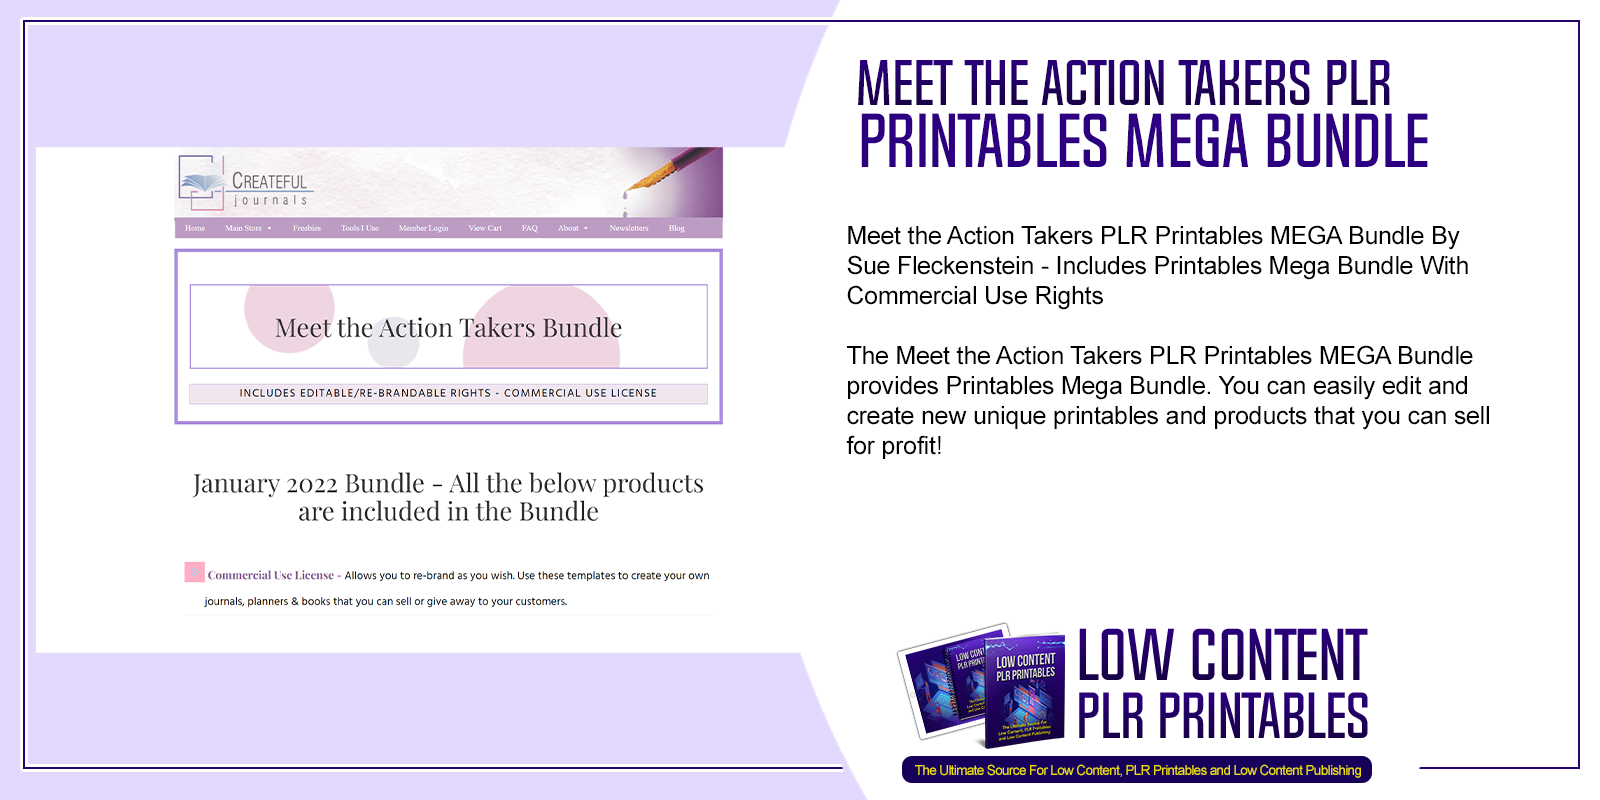 Meet the Action Takers PLR Printables MEGA Bundle